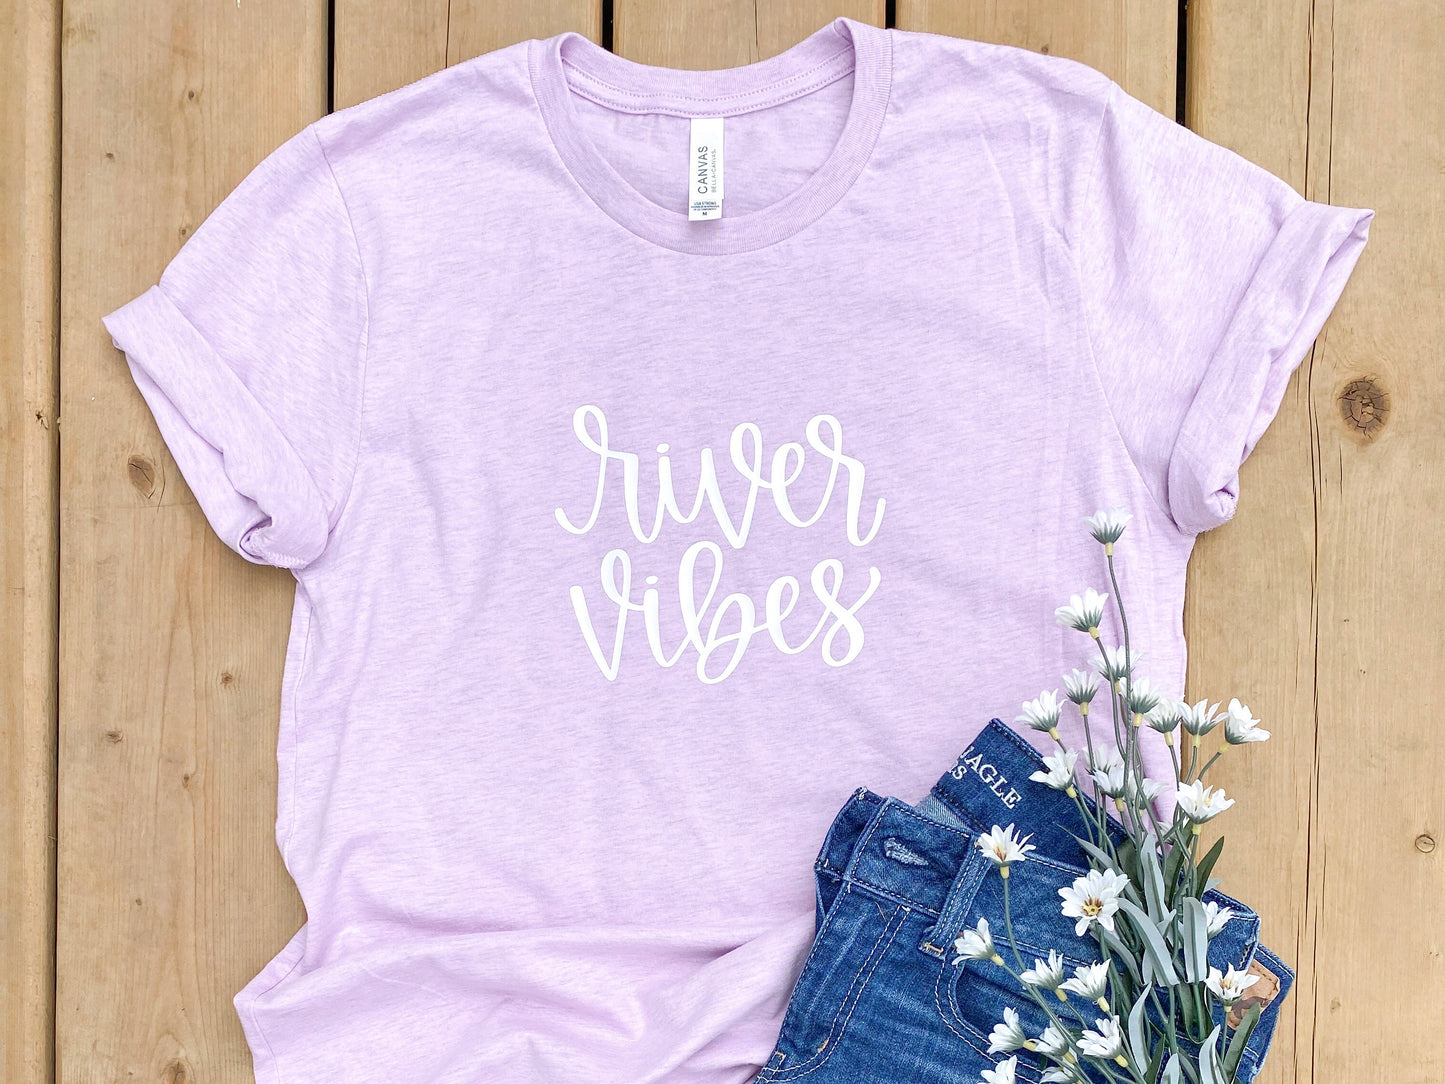 River Vibes XL T-shirt